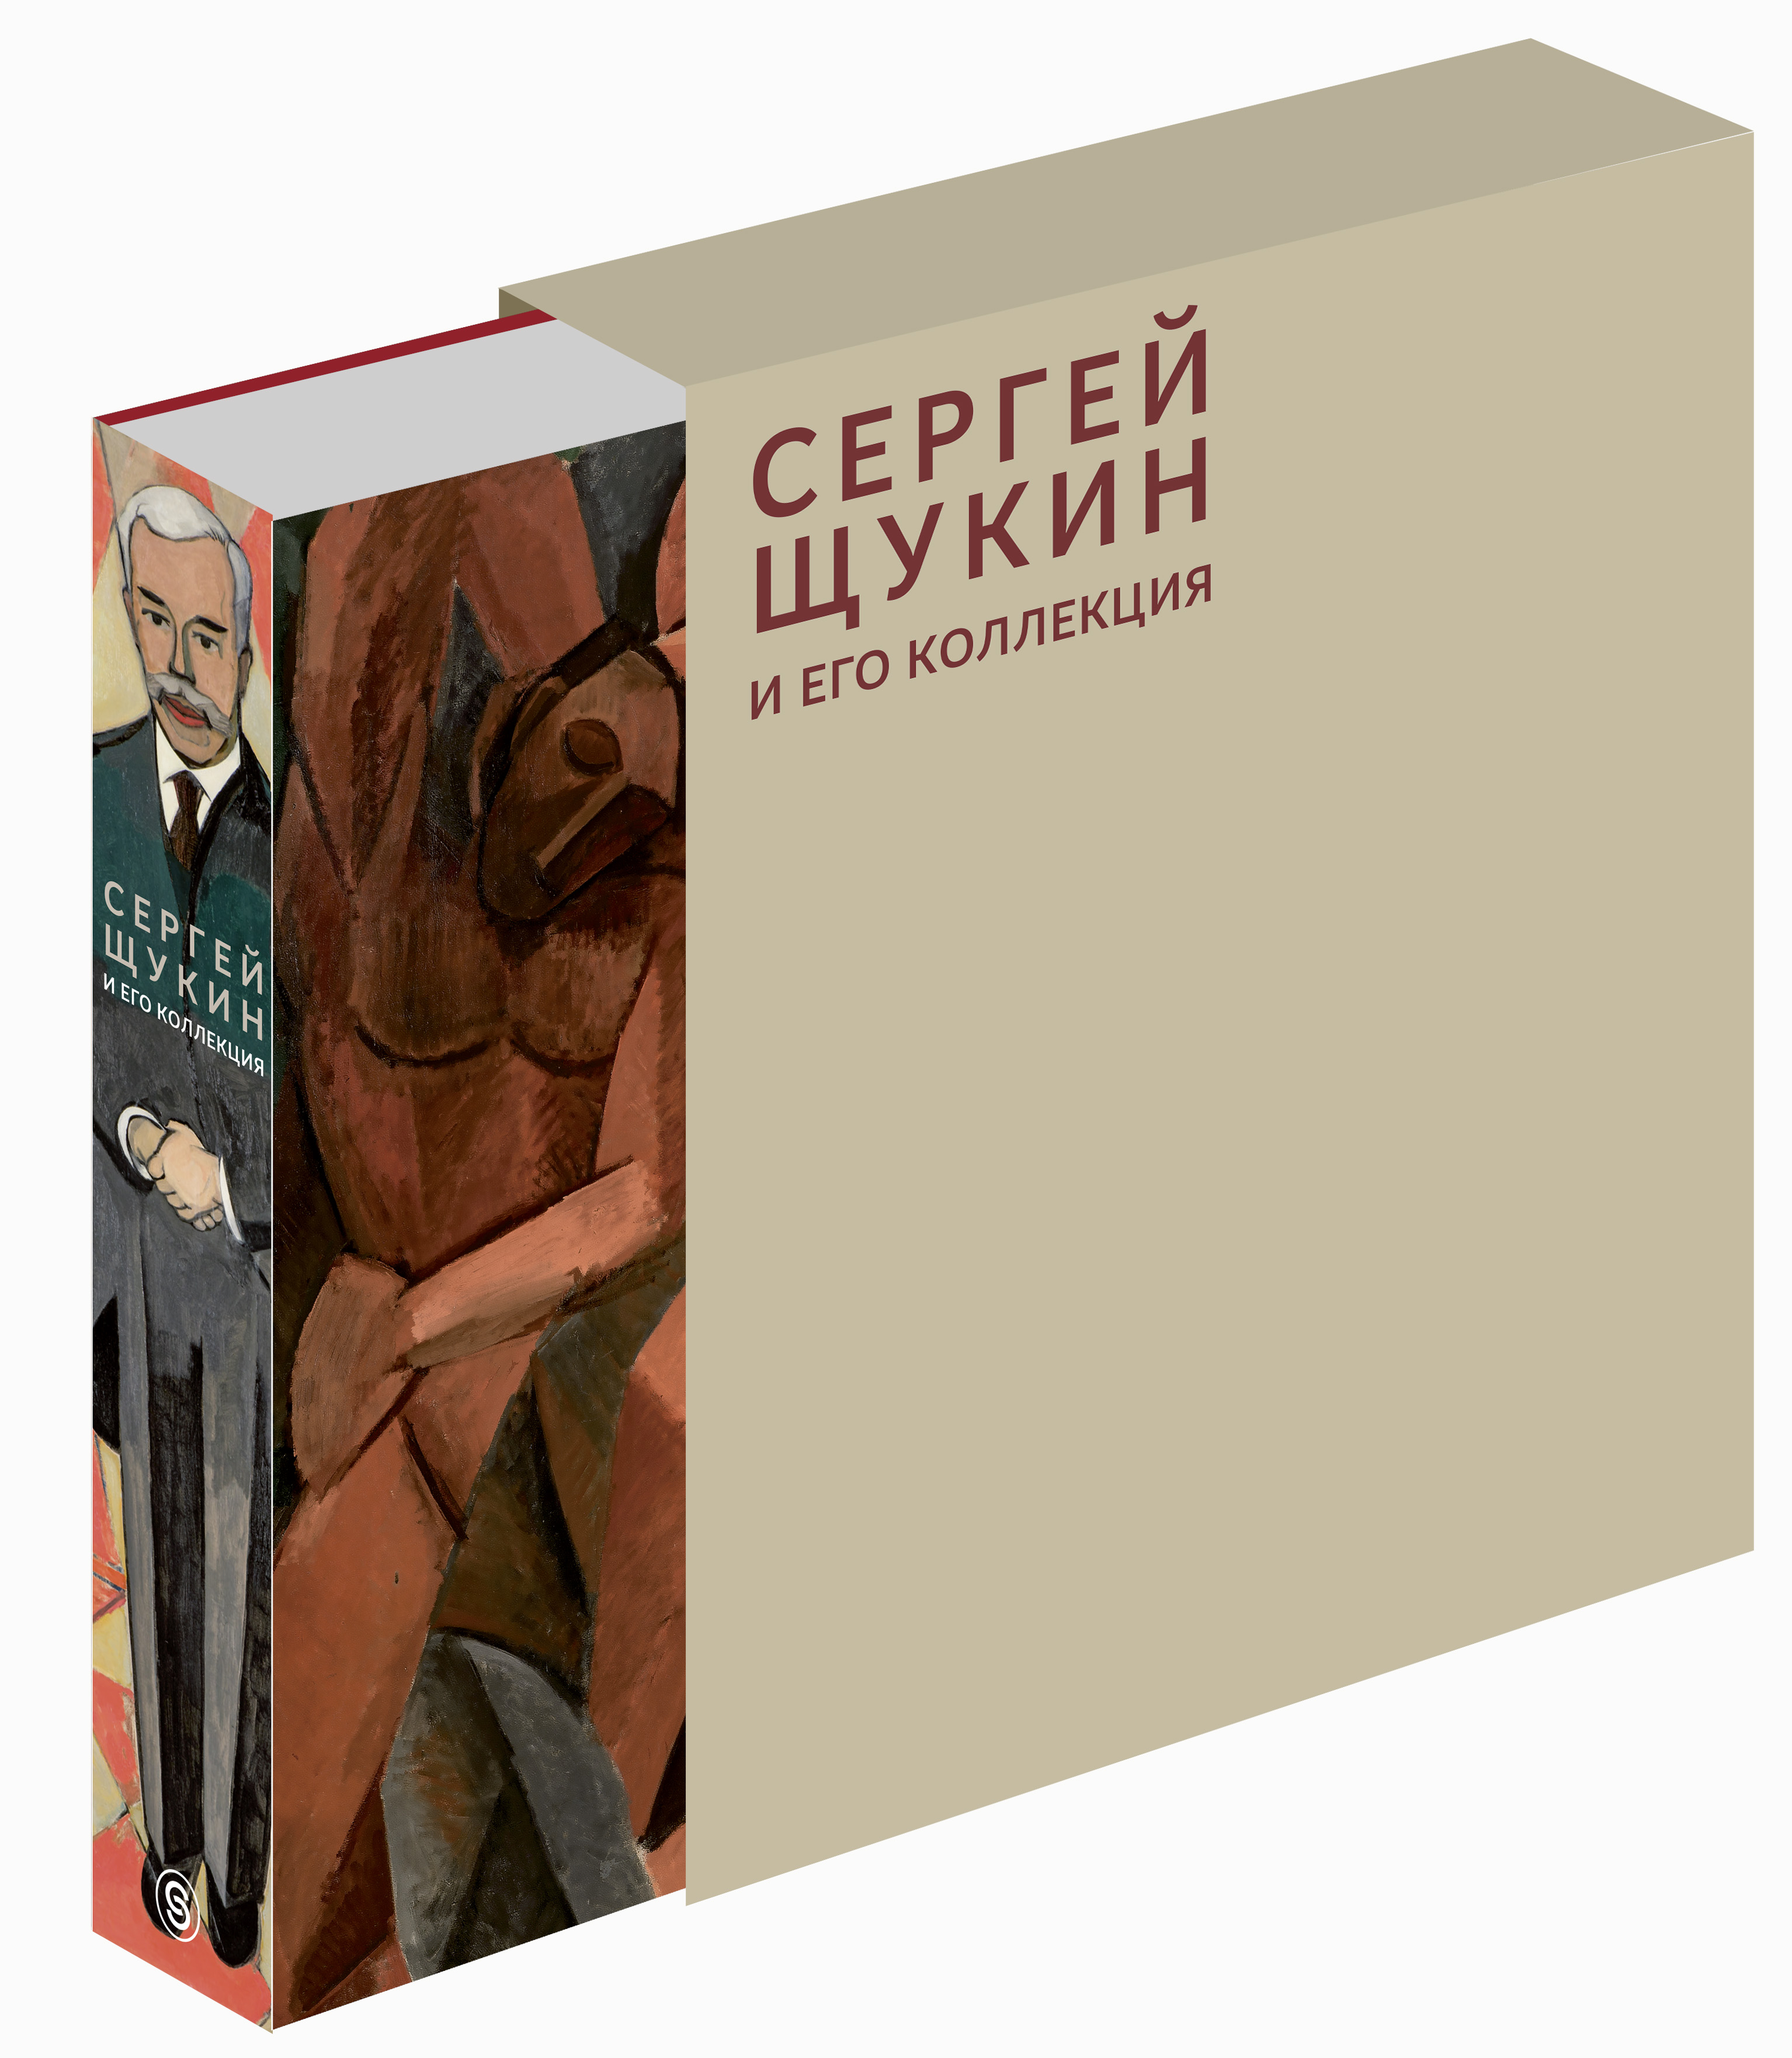 Сергей Щукин и его коллекция (подарочное издание). Наталия Семенова